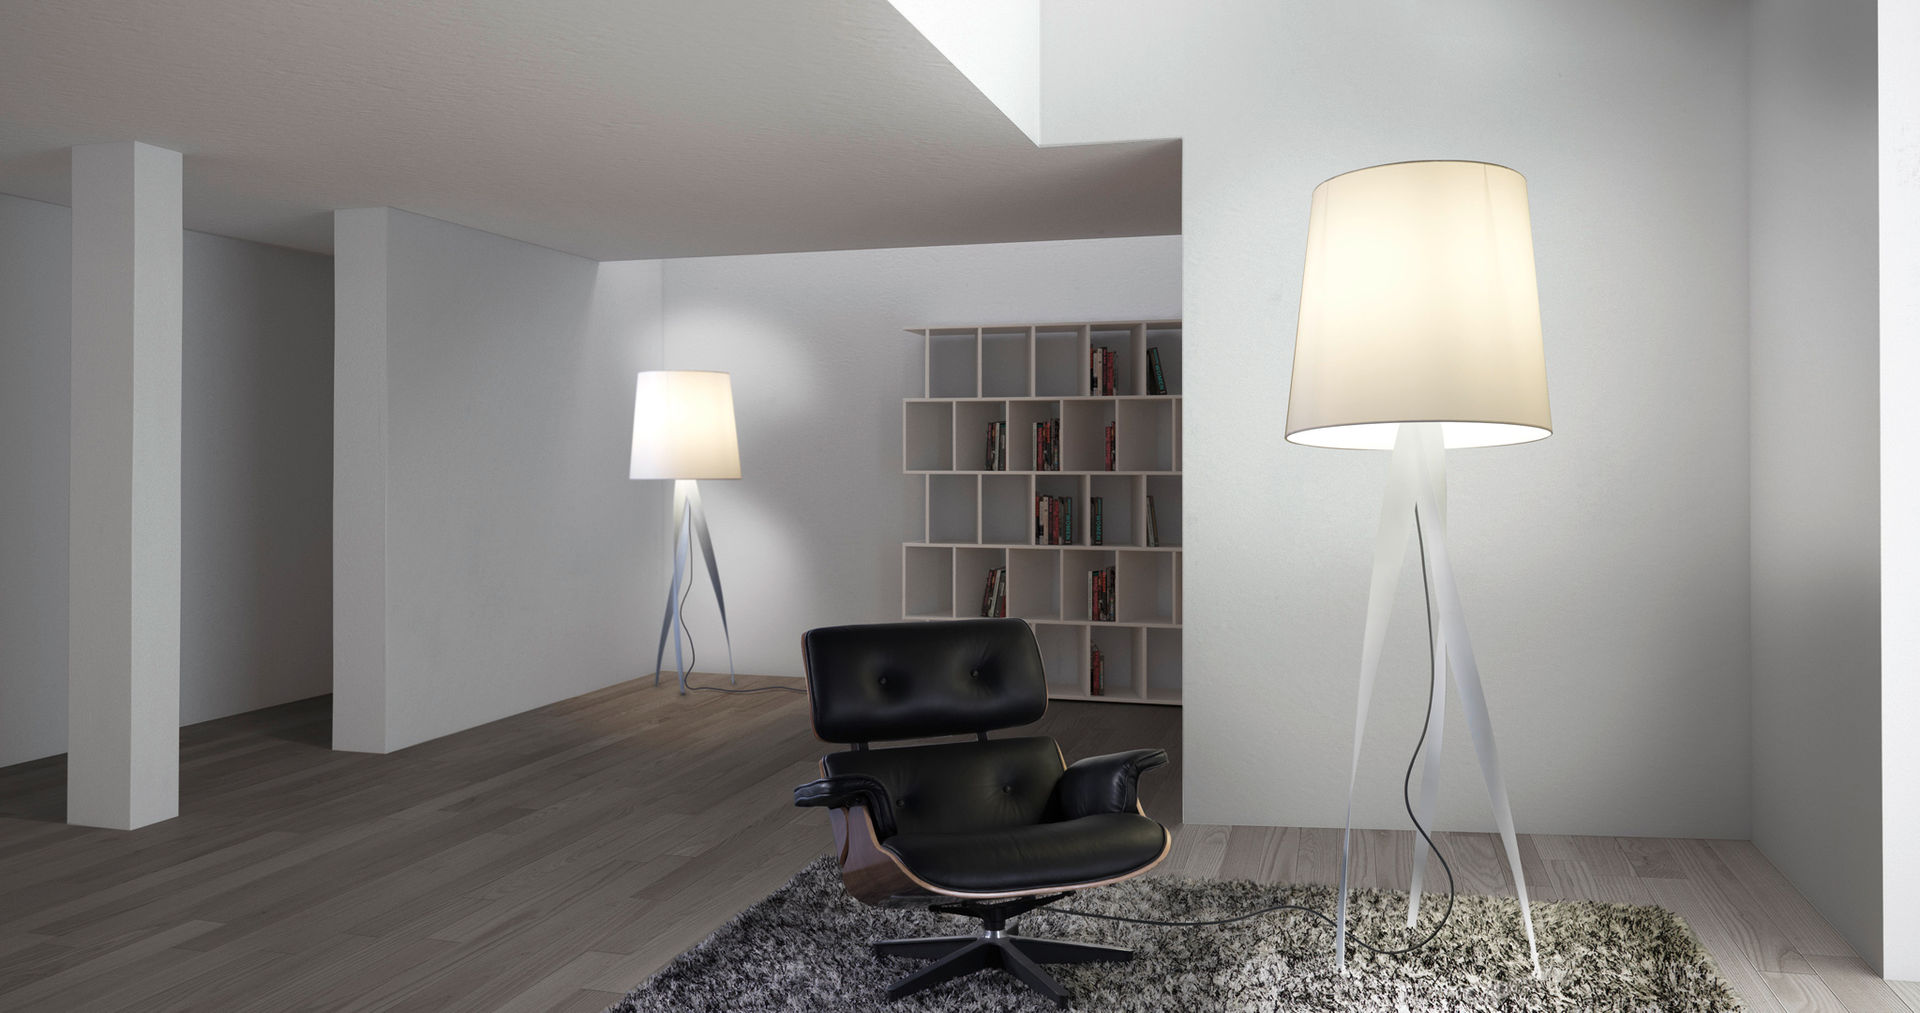 Lámparas de pie, el complemento perfecto., Griscan diseño iluminación Griscan diseño iluminación Living room Lighting